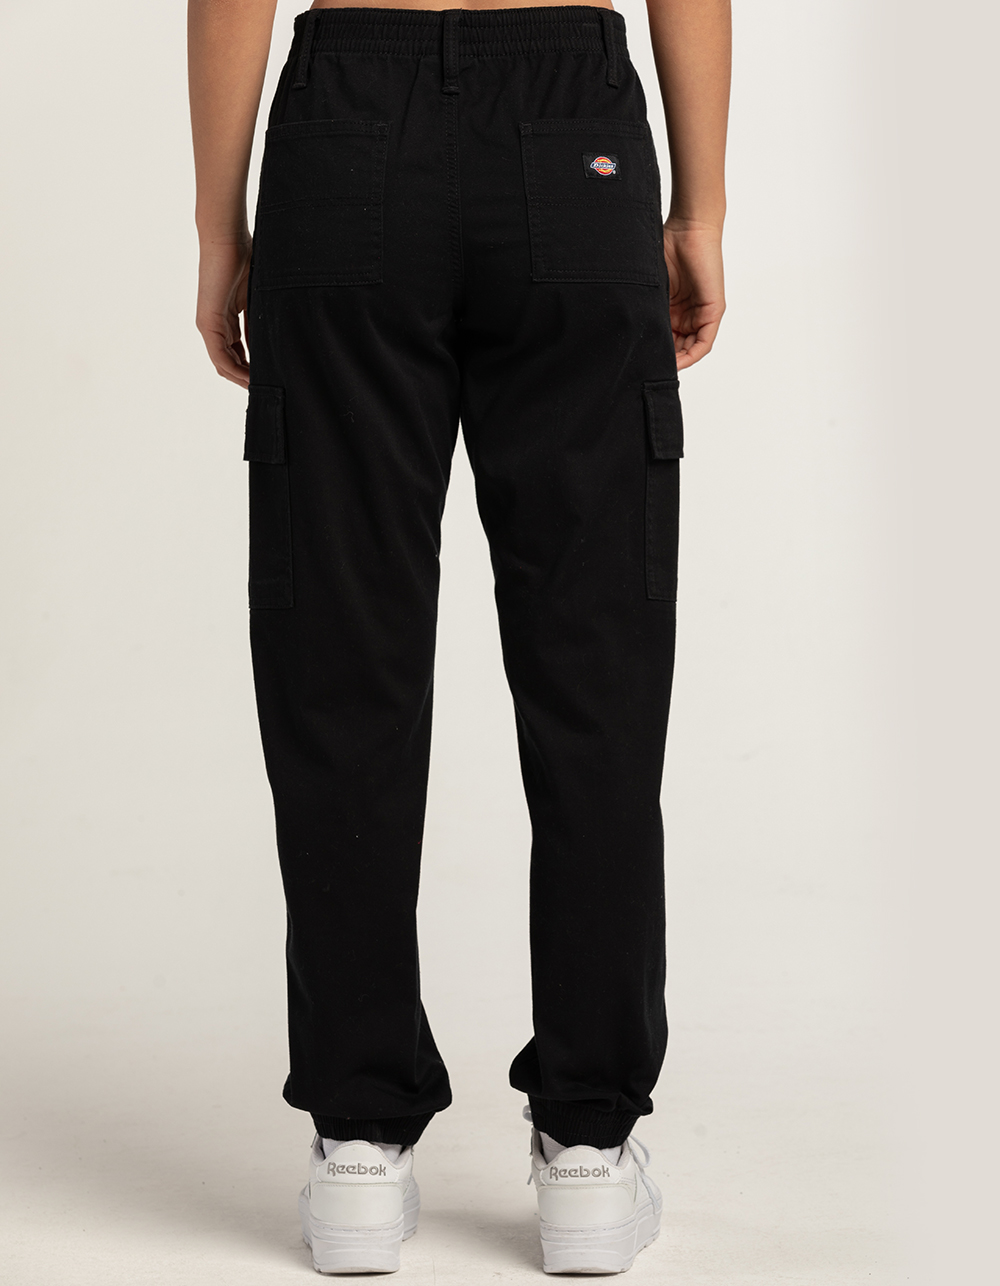 Buy Streetwear Cargo Pants // 001 Online – Urban Monkey®